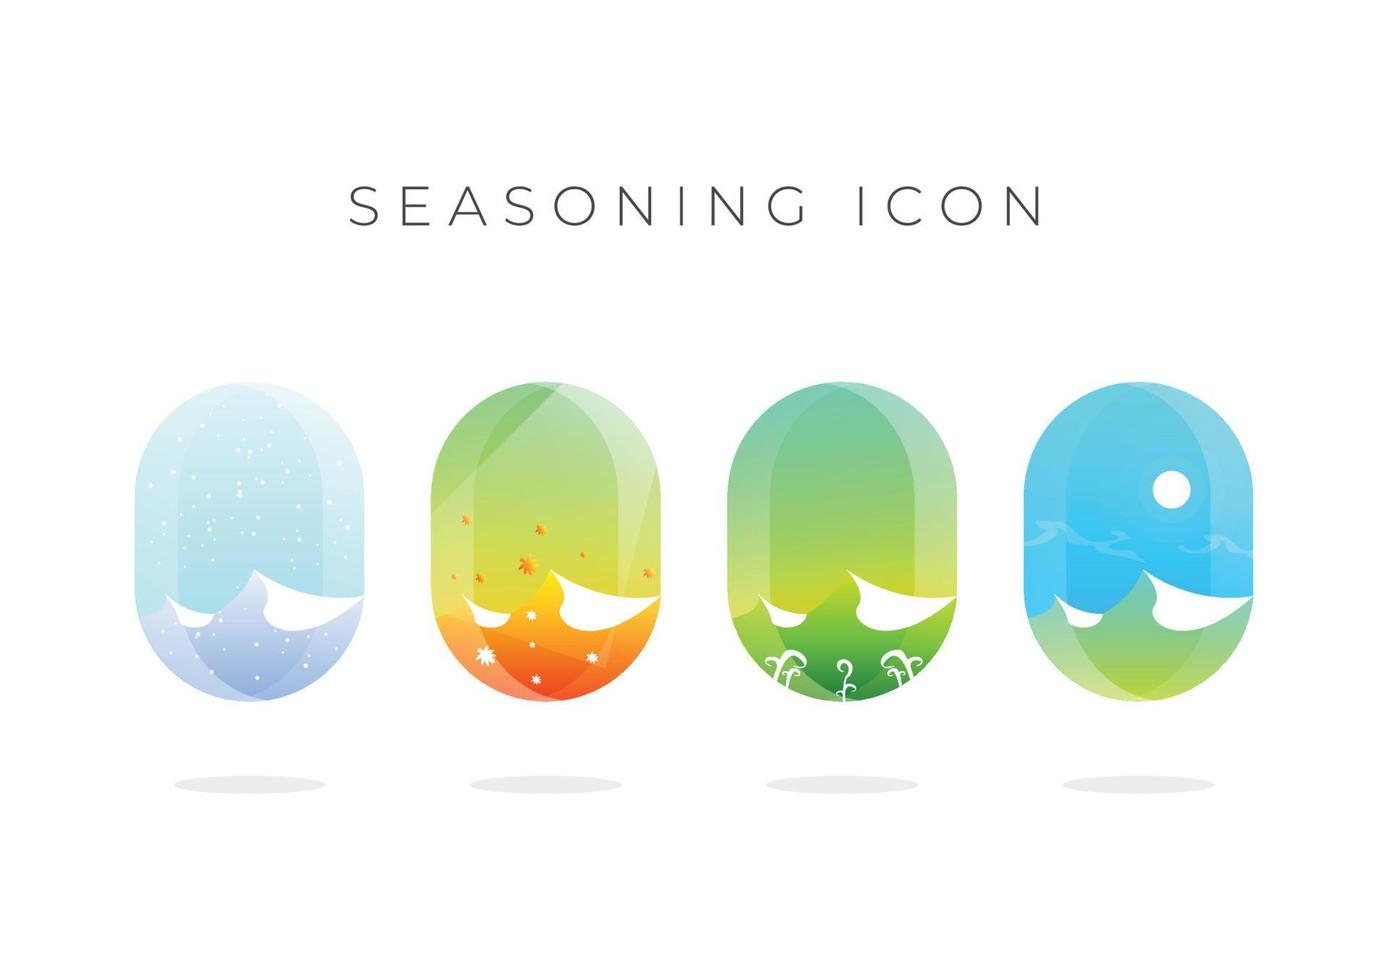 disegno di illustrazione di quattro stagioni, icona di quattro stagioni, estate, autunno, inverno, primavera vettore